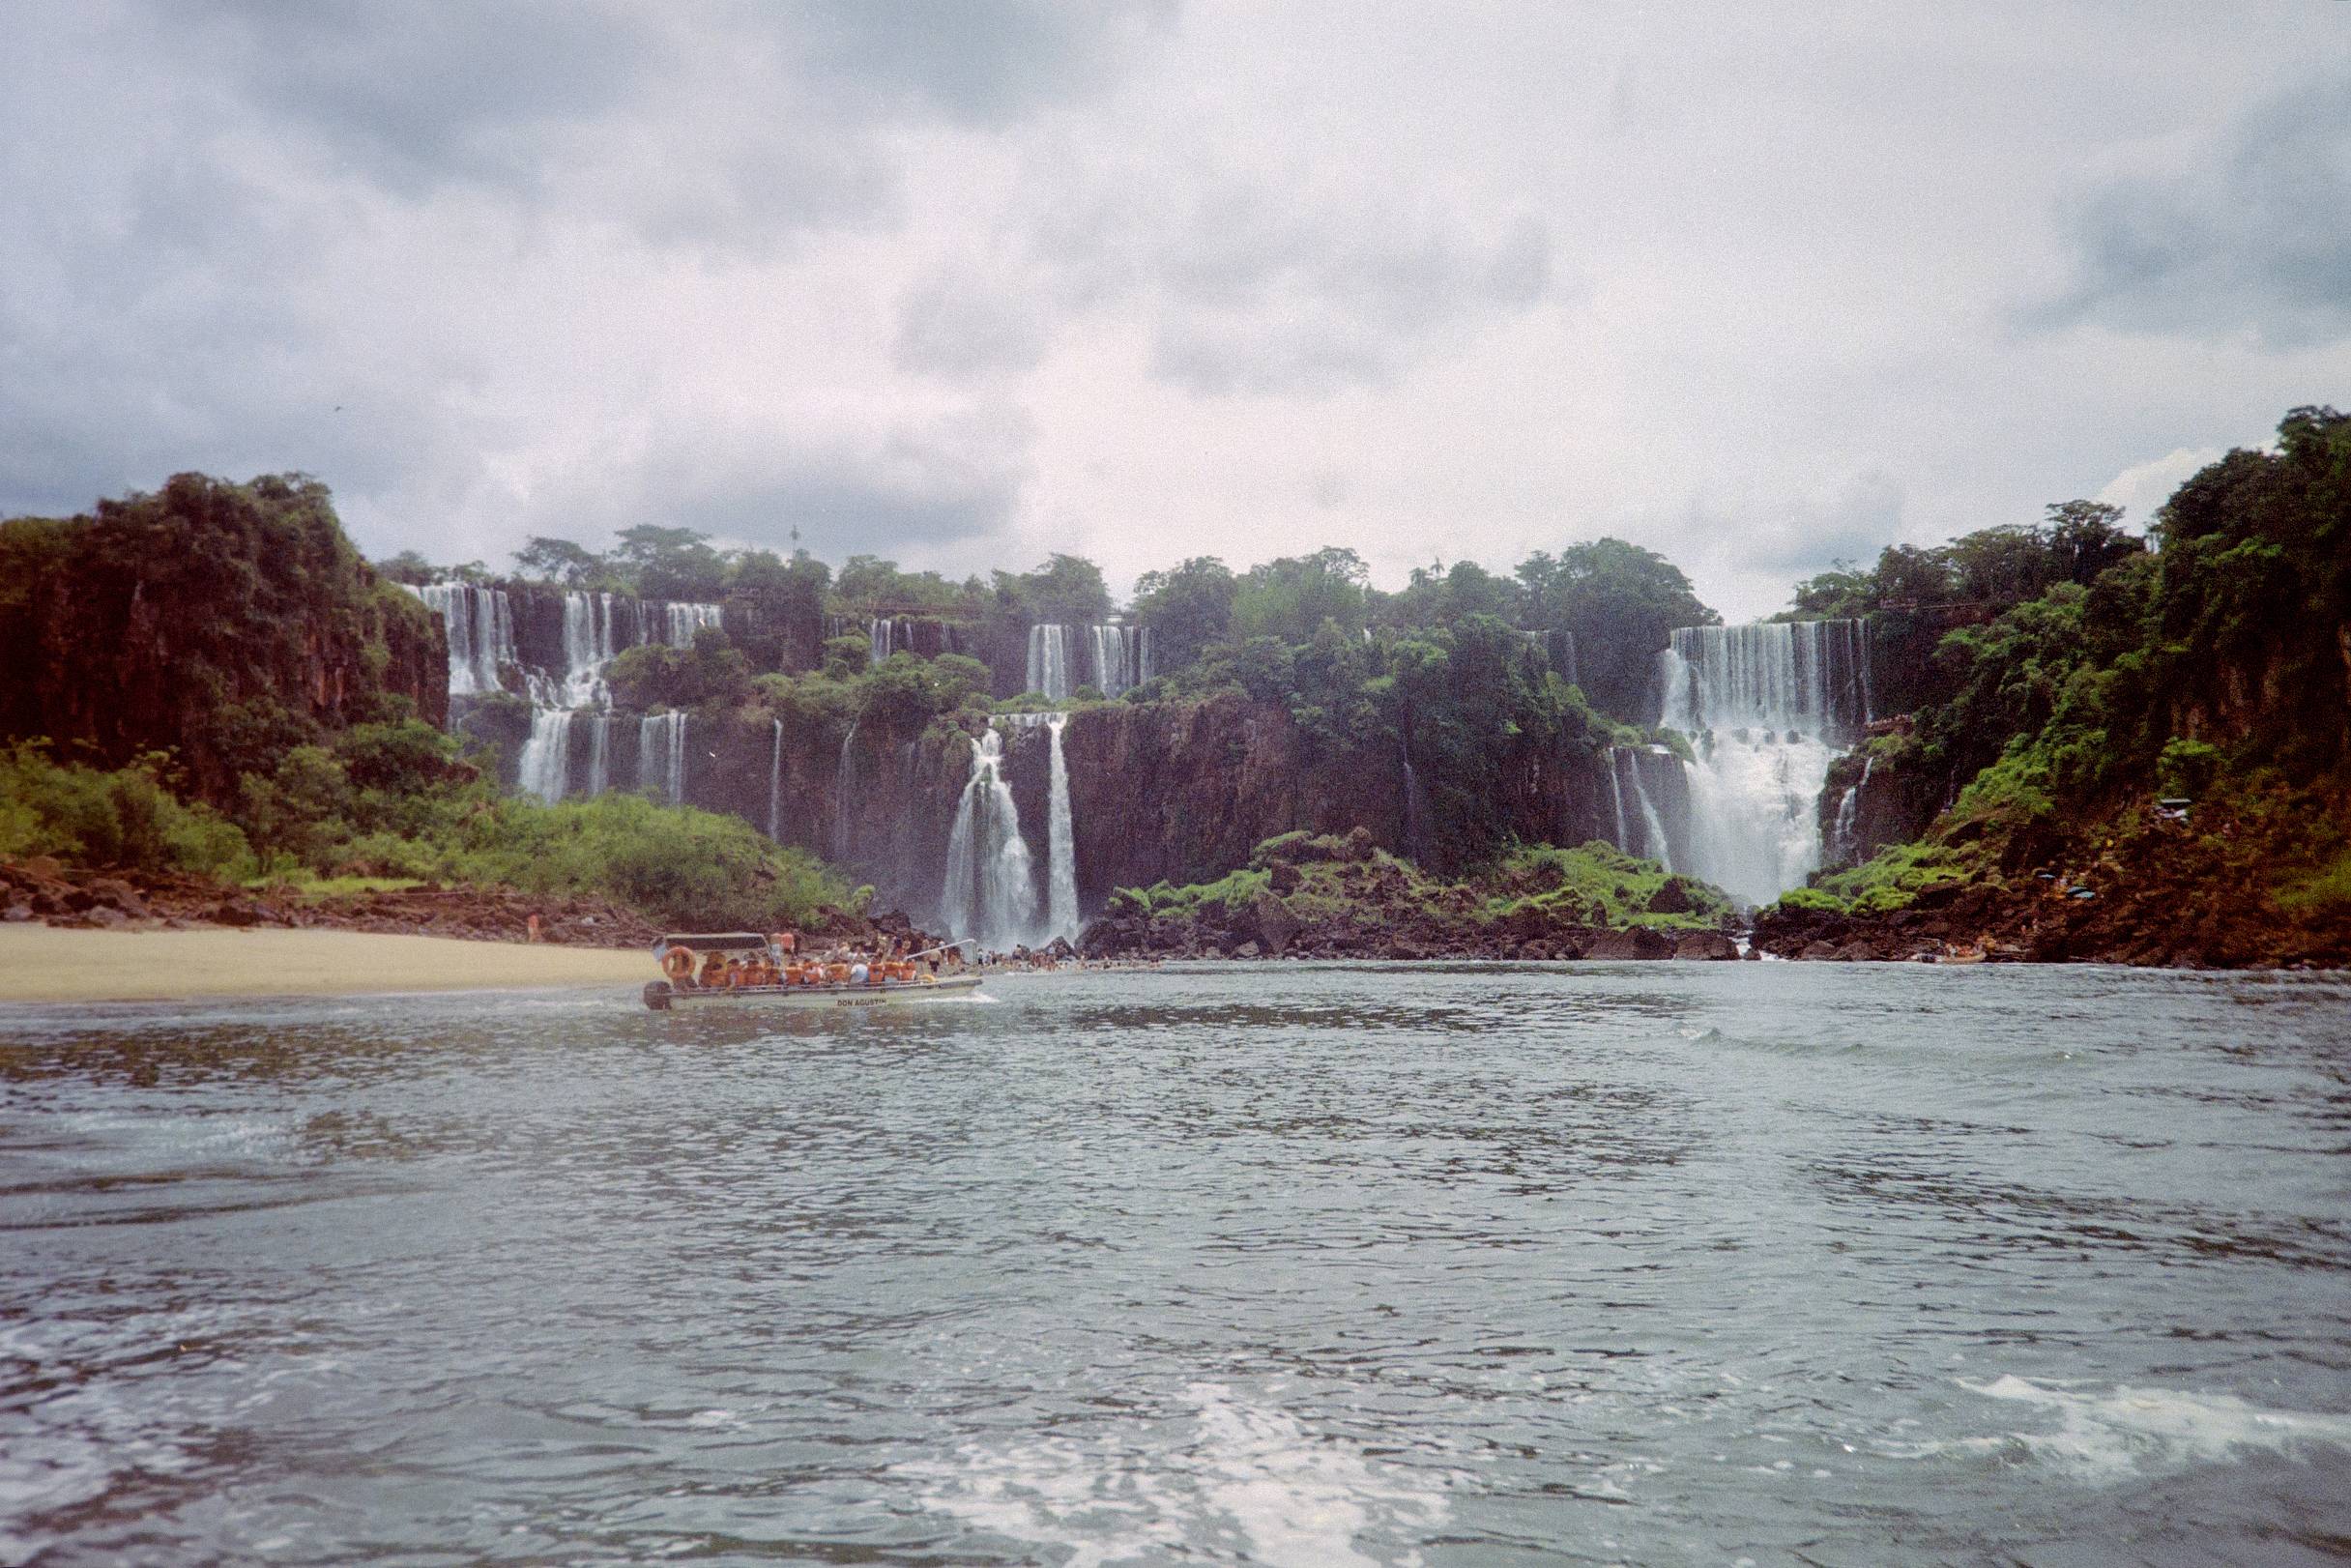 Réveillon em Foz do Iguaçu